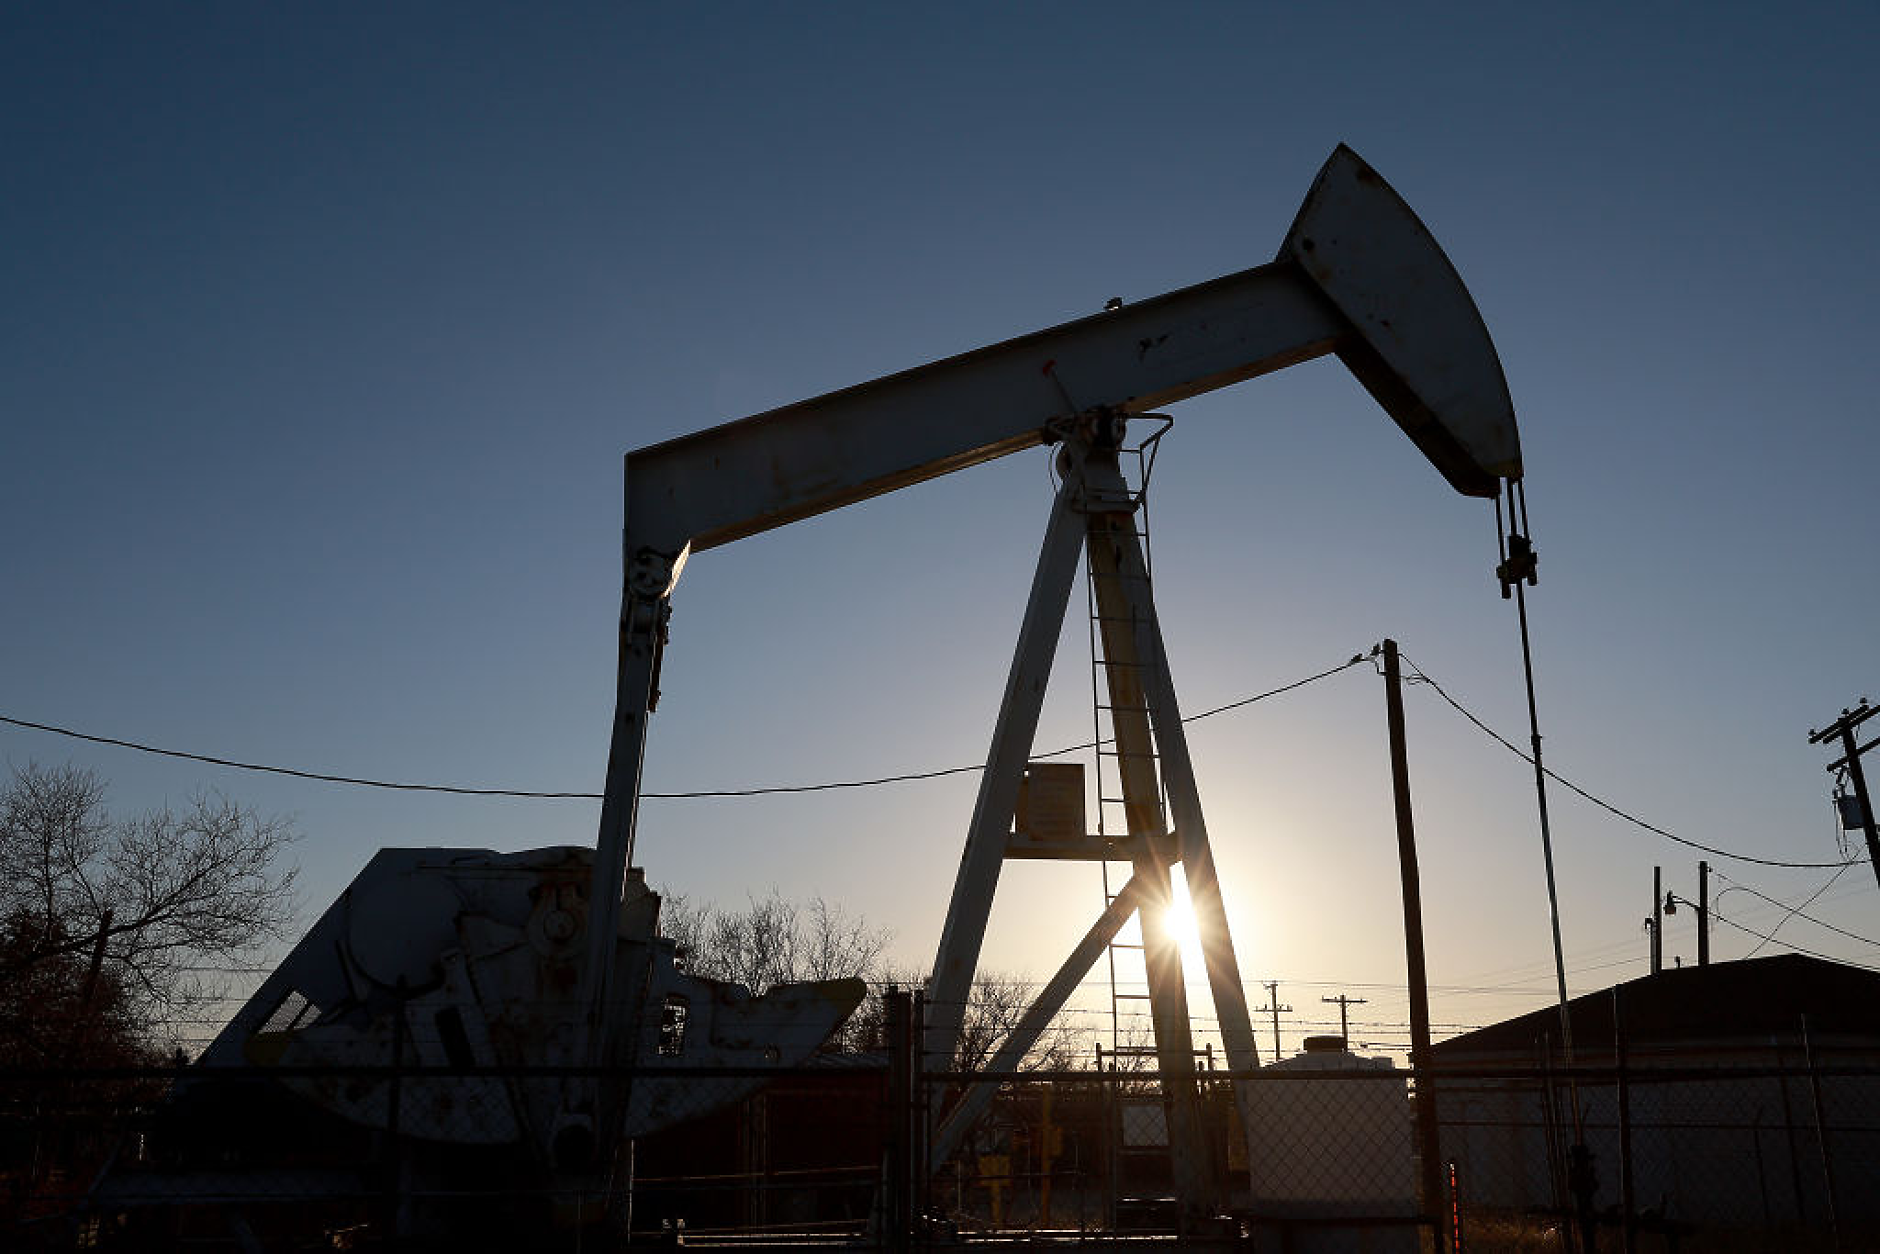 Петролът поскъпва, тъй като запасите в САЩ продължават да се свиват